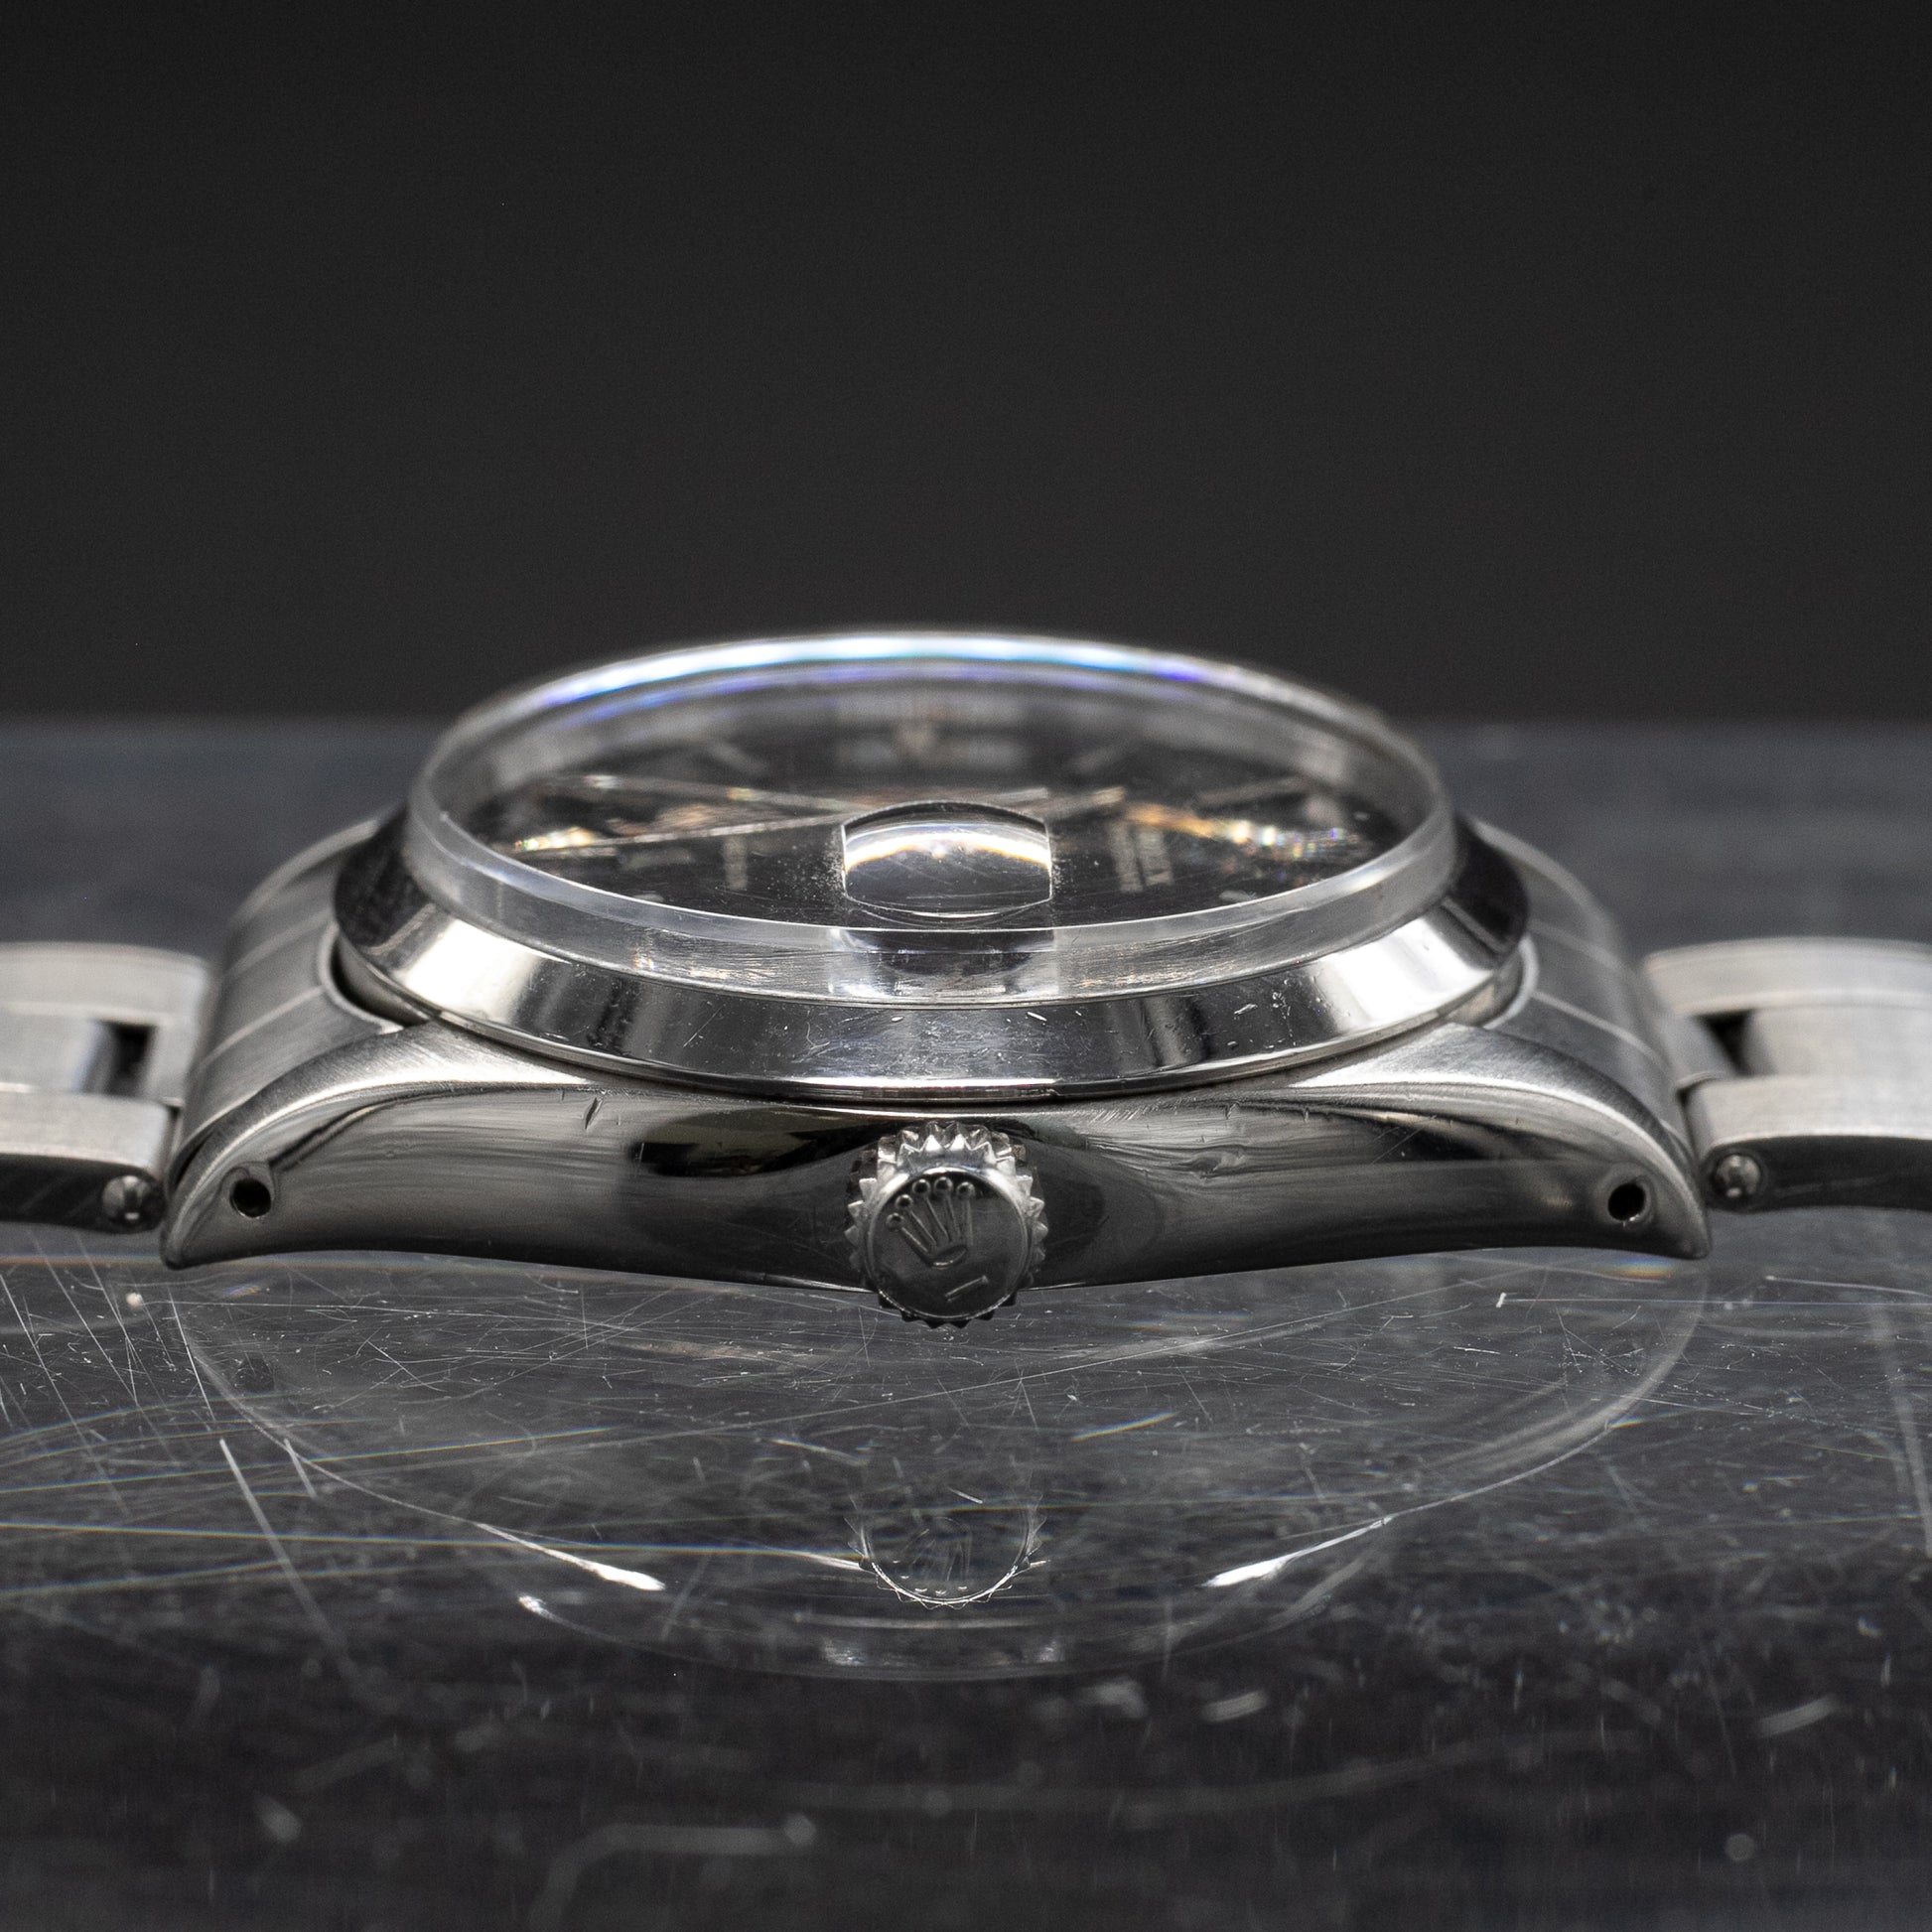 Rolex OysterDate Precision - L'Atelier du Temps